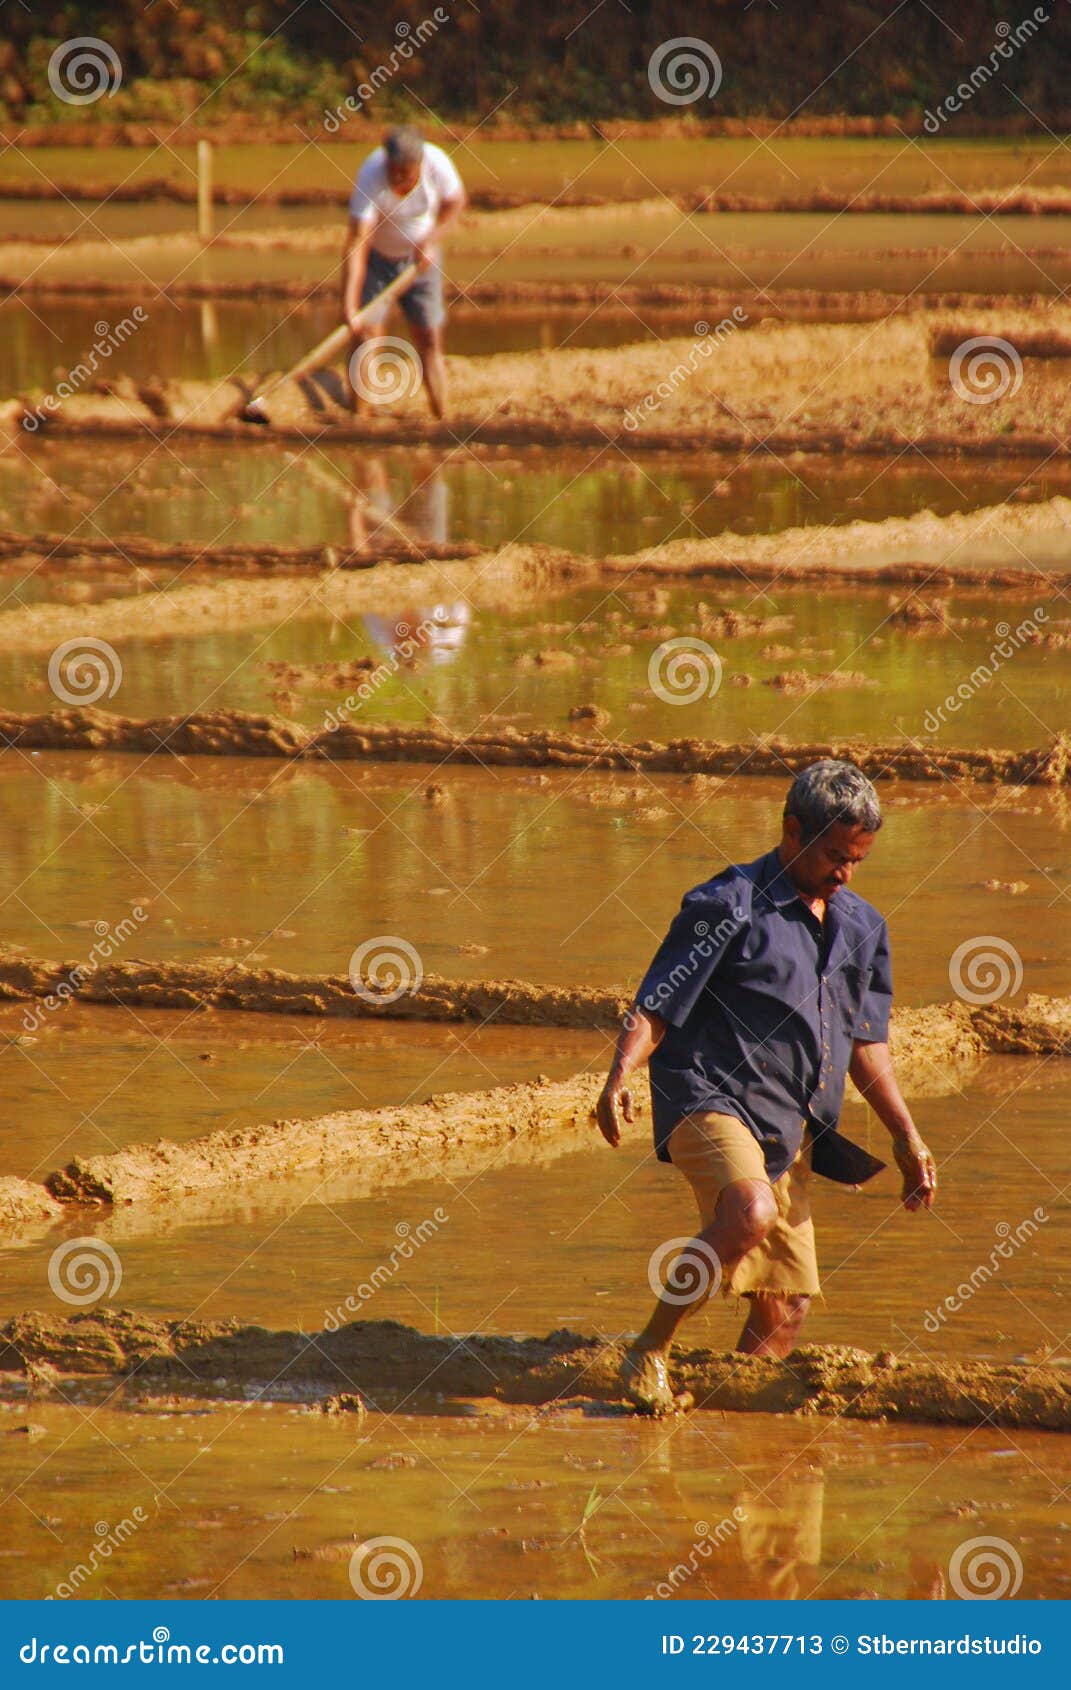 Les agriculteurs qui travaillent dur sur les rizières pour démarrer le cycle ou les phases de la riziculture dans la campagne indi. Paysage typique dans un village rural dans la partie sud de l'inde où la main-d'oeuvre dure est nécessaire pour l'activité agricole pour produire notre riz alimentaire de base.